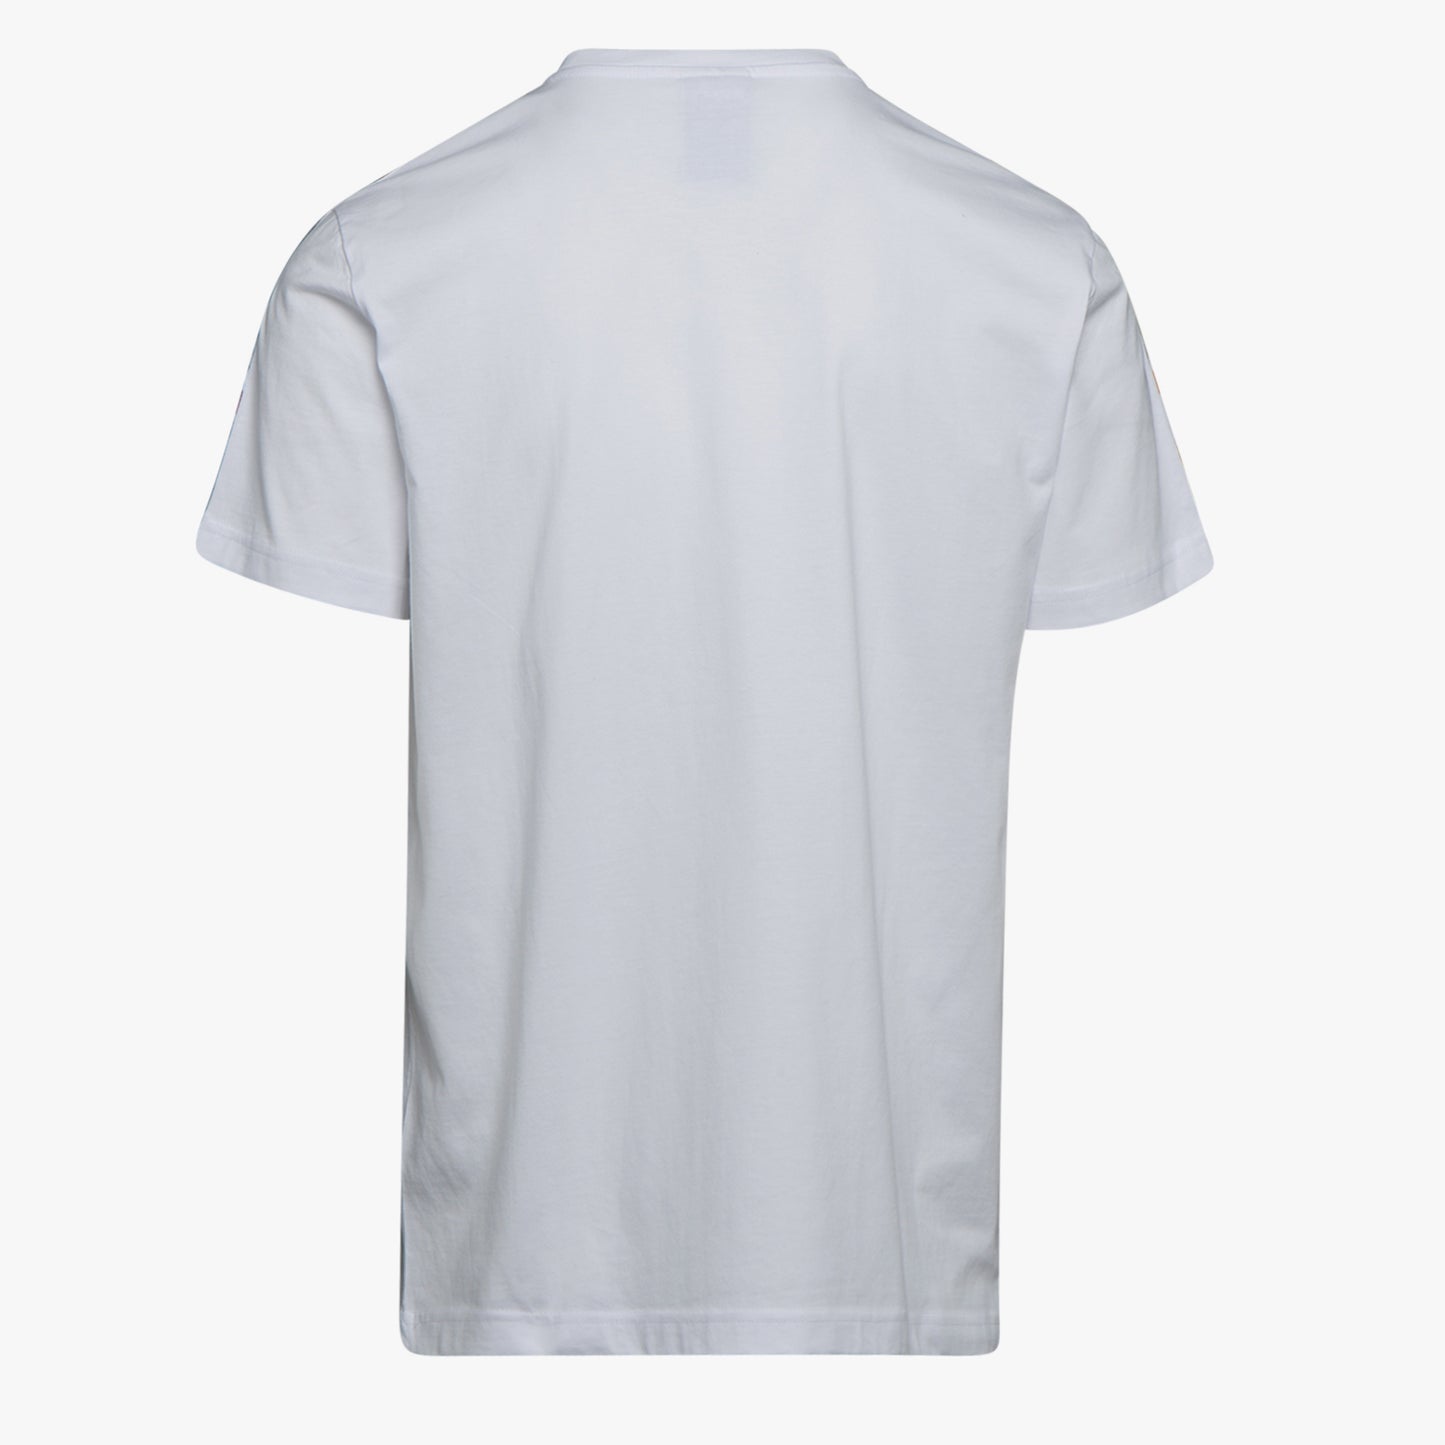 Diadora - T-shirt SS 5palle Offside Optical White